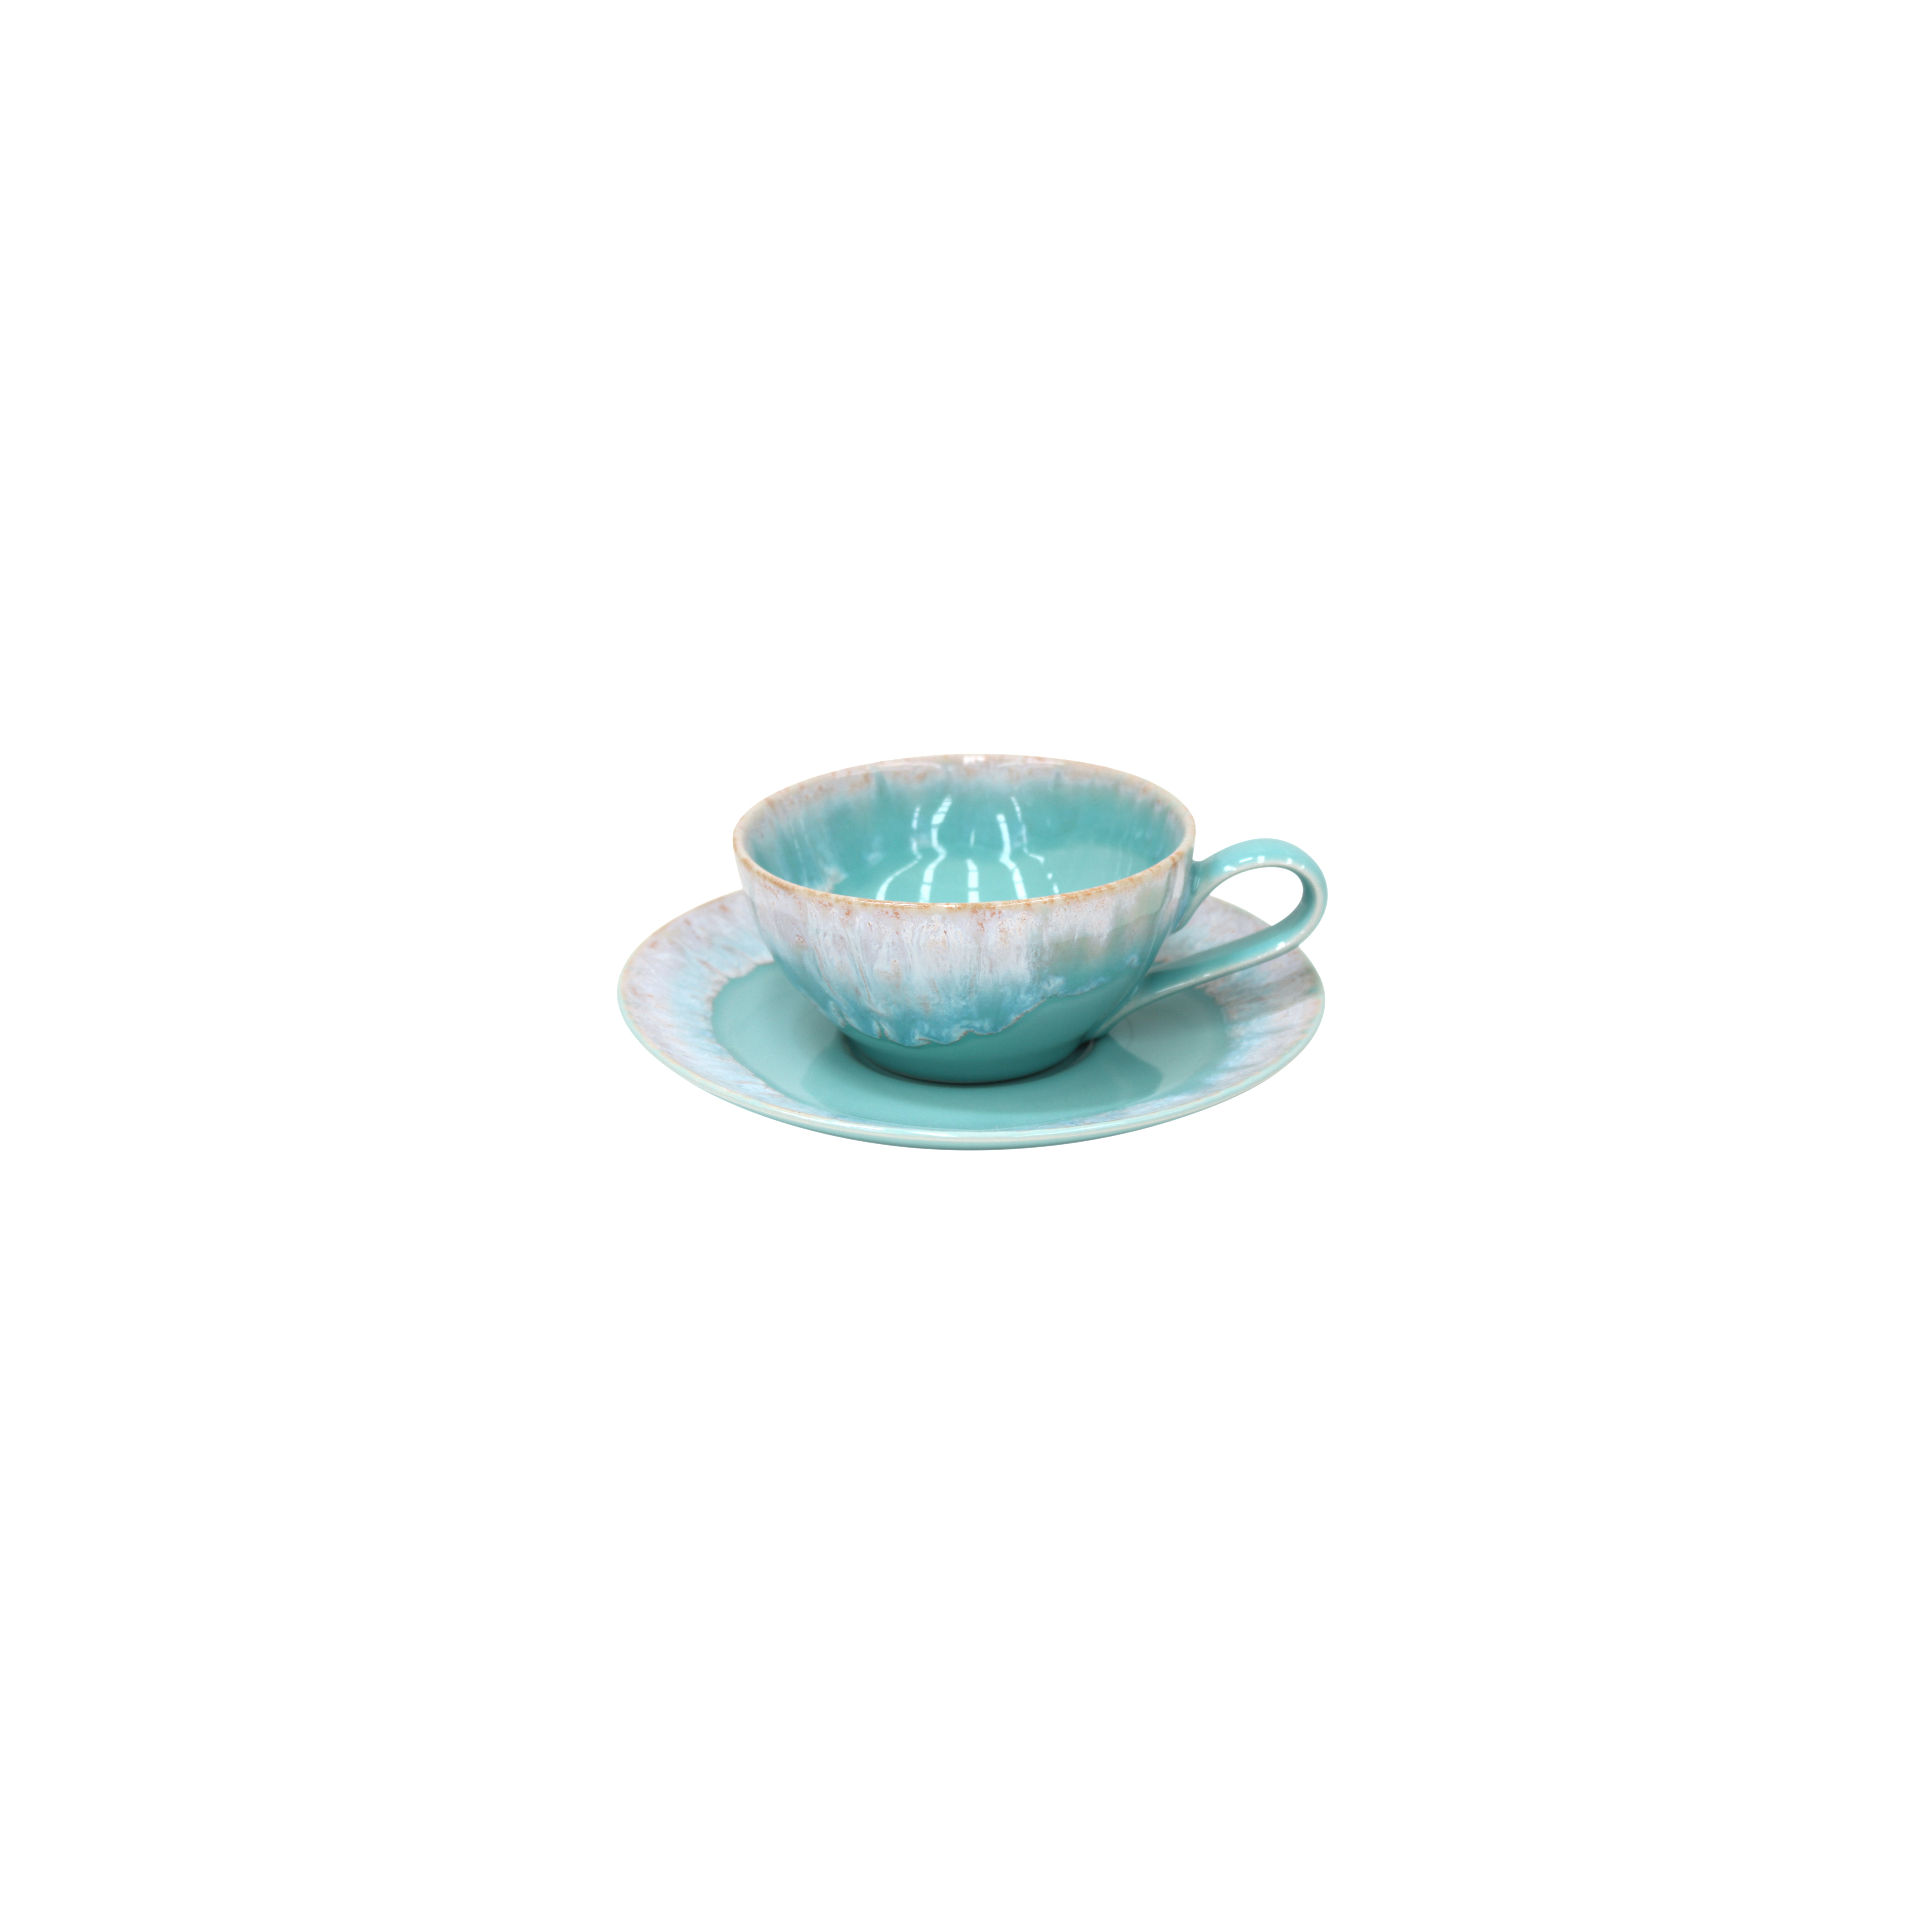 Taormina Aqua Tea Cup And Saucer 0.2l Gift